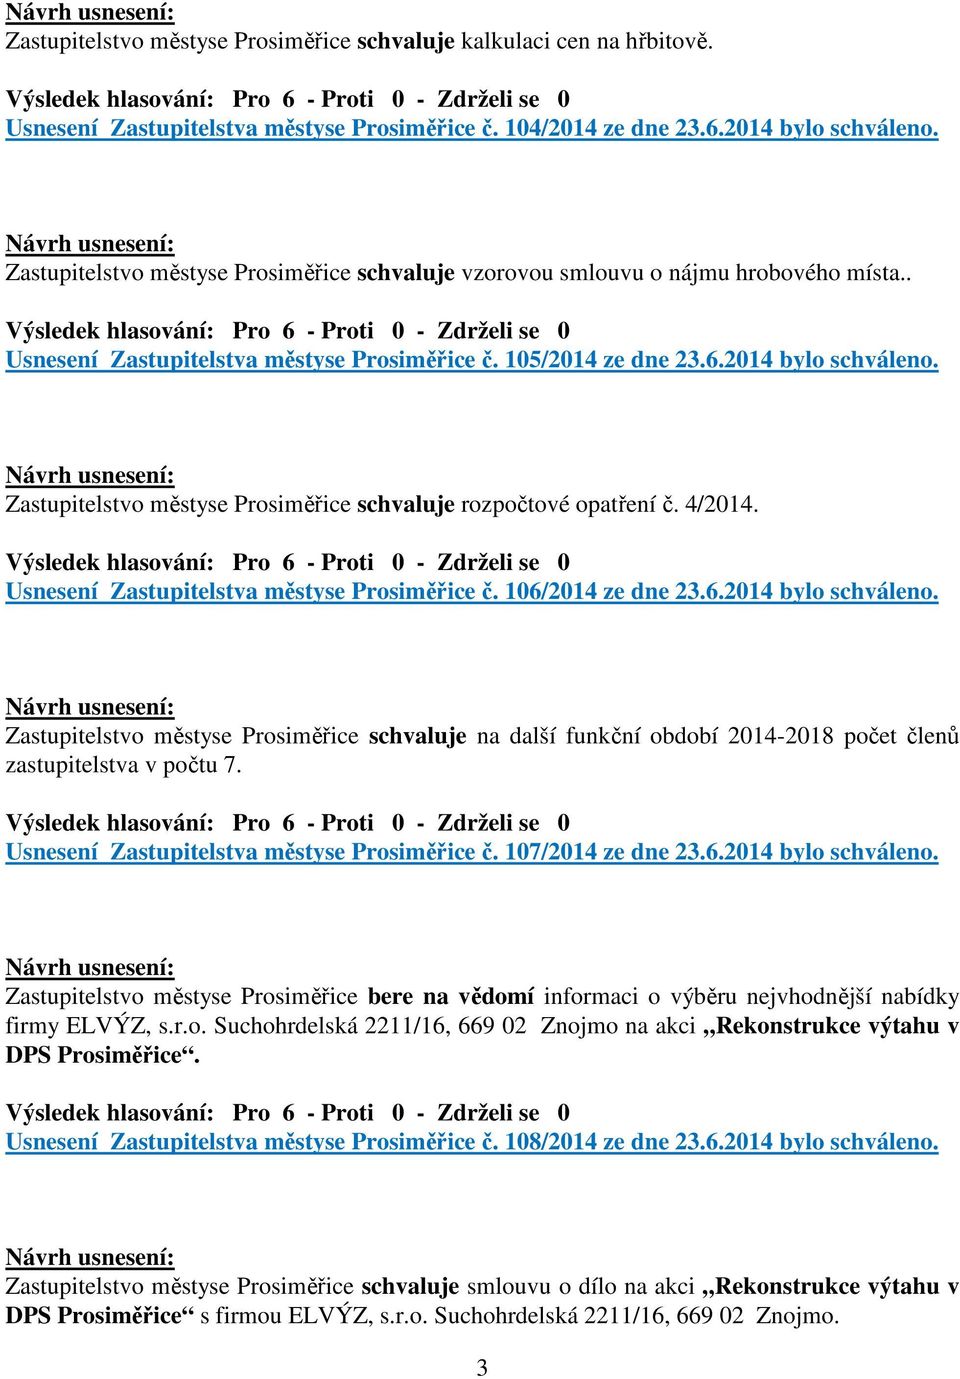 Zastupitelstvo městyse Prosiměřice schvaluje rozpočtové opatření č. 4/2014. Usnesení Zastupitelstva městyse Prosiměřice č. 106/2014 ze dne 23.6.2014 bylo schváleno.